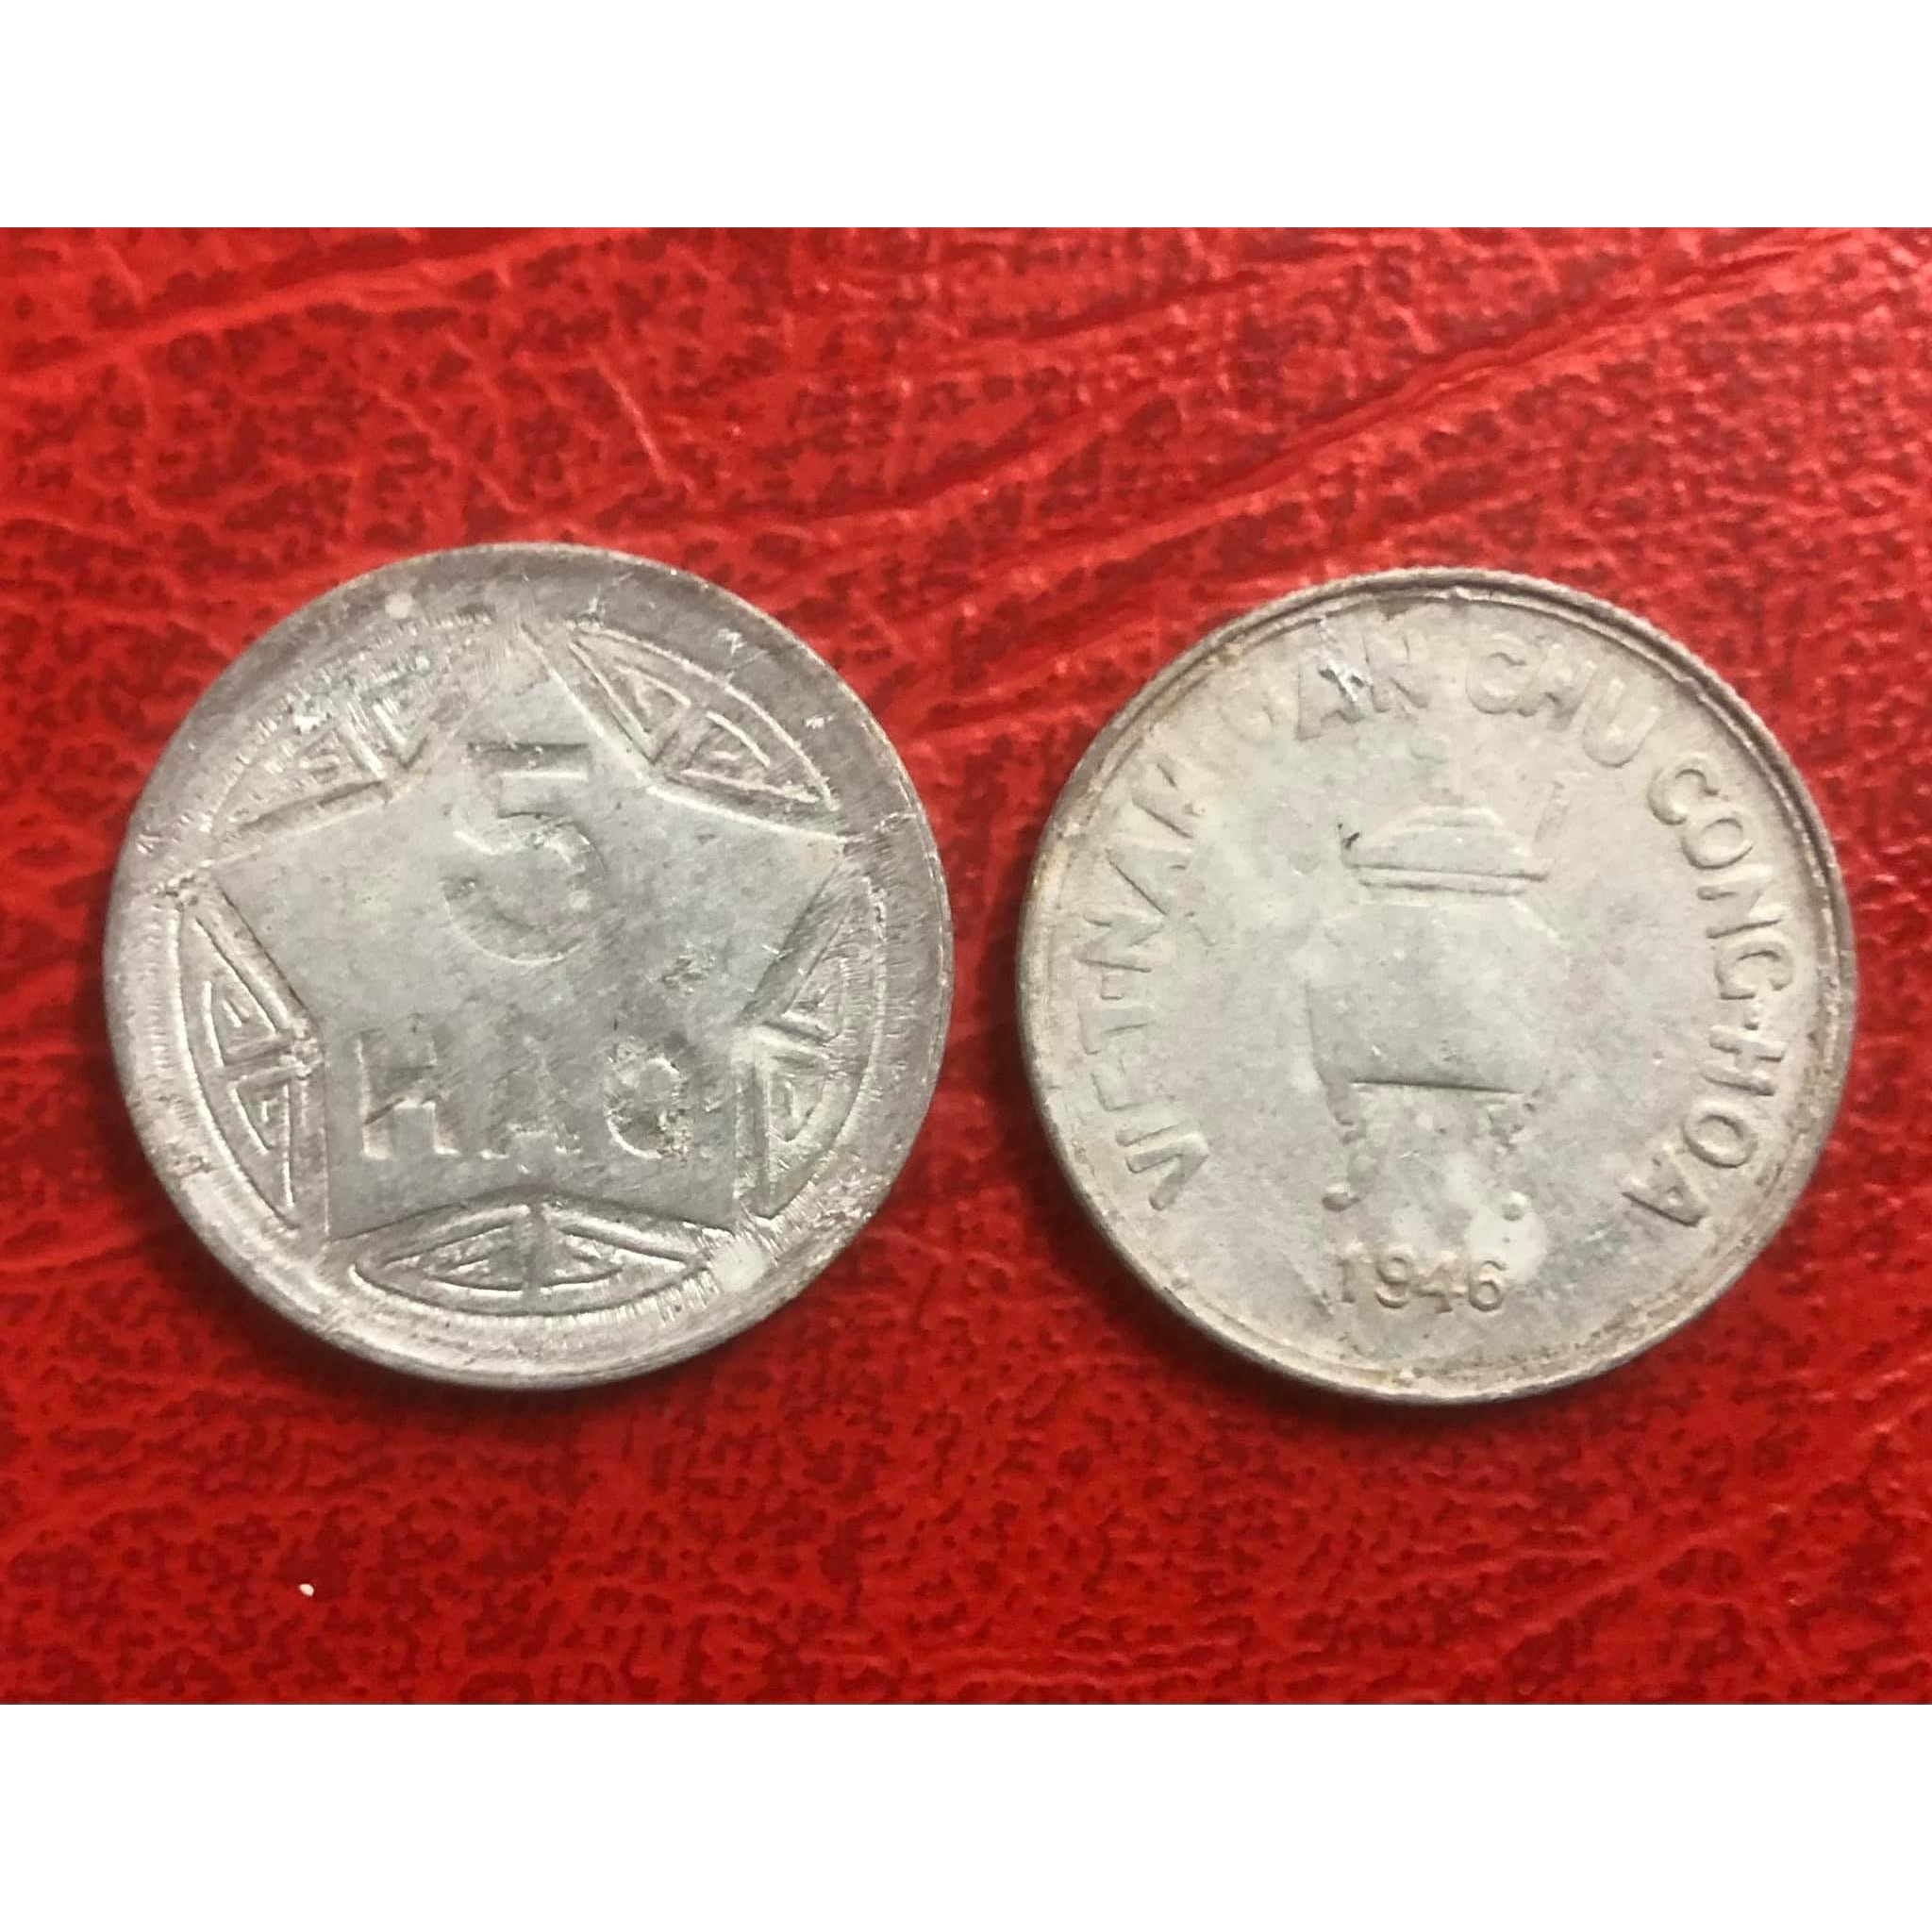 Đồng xu 5 hào, một trong những đồng xu đầu tiên của Việt Nam